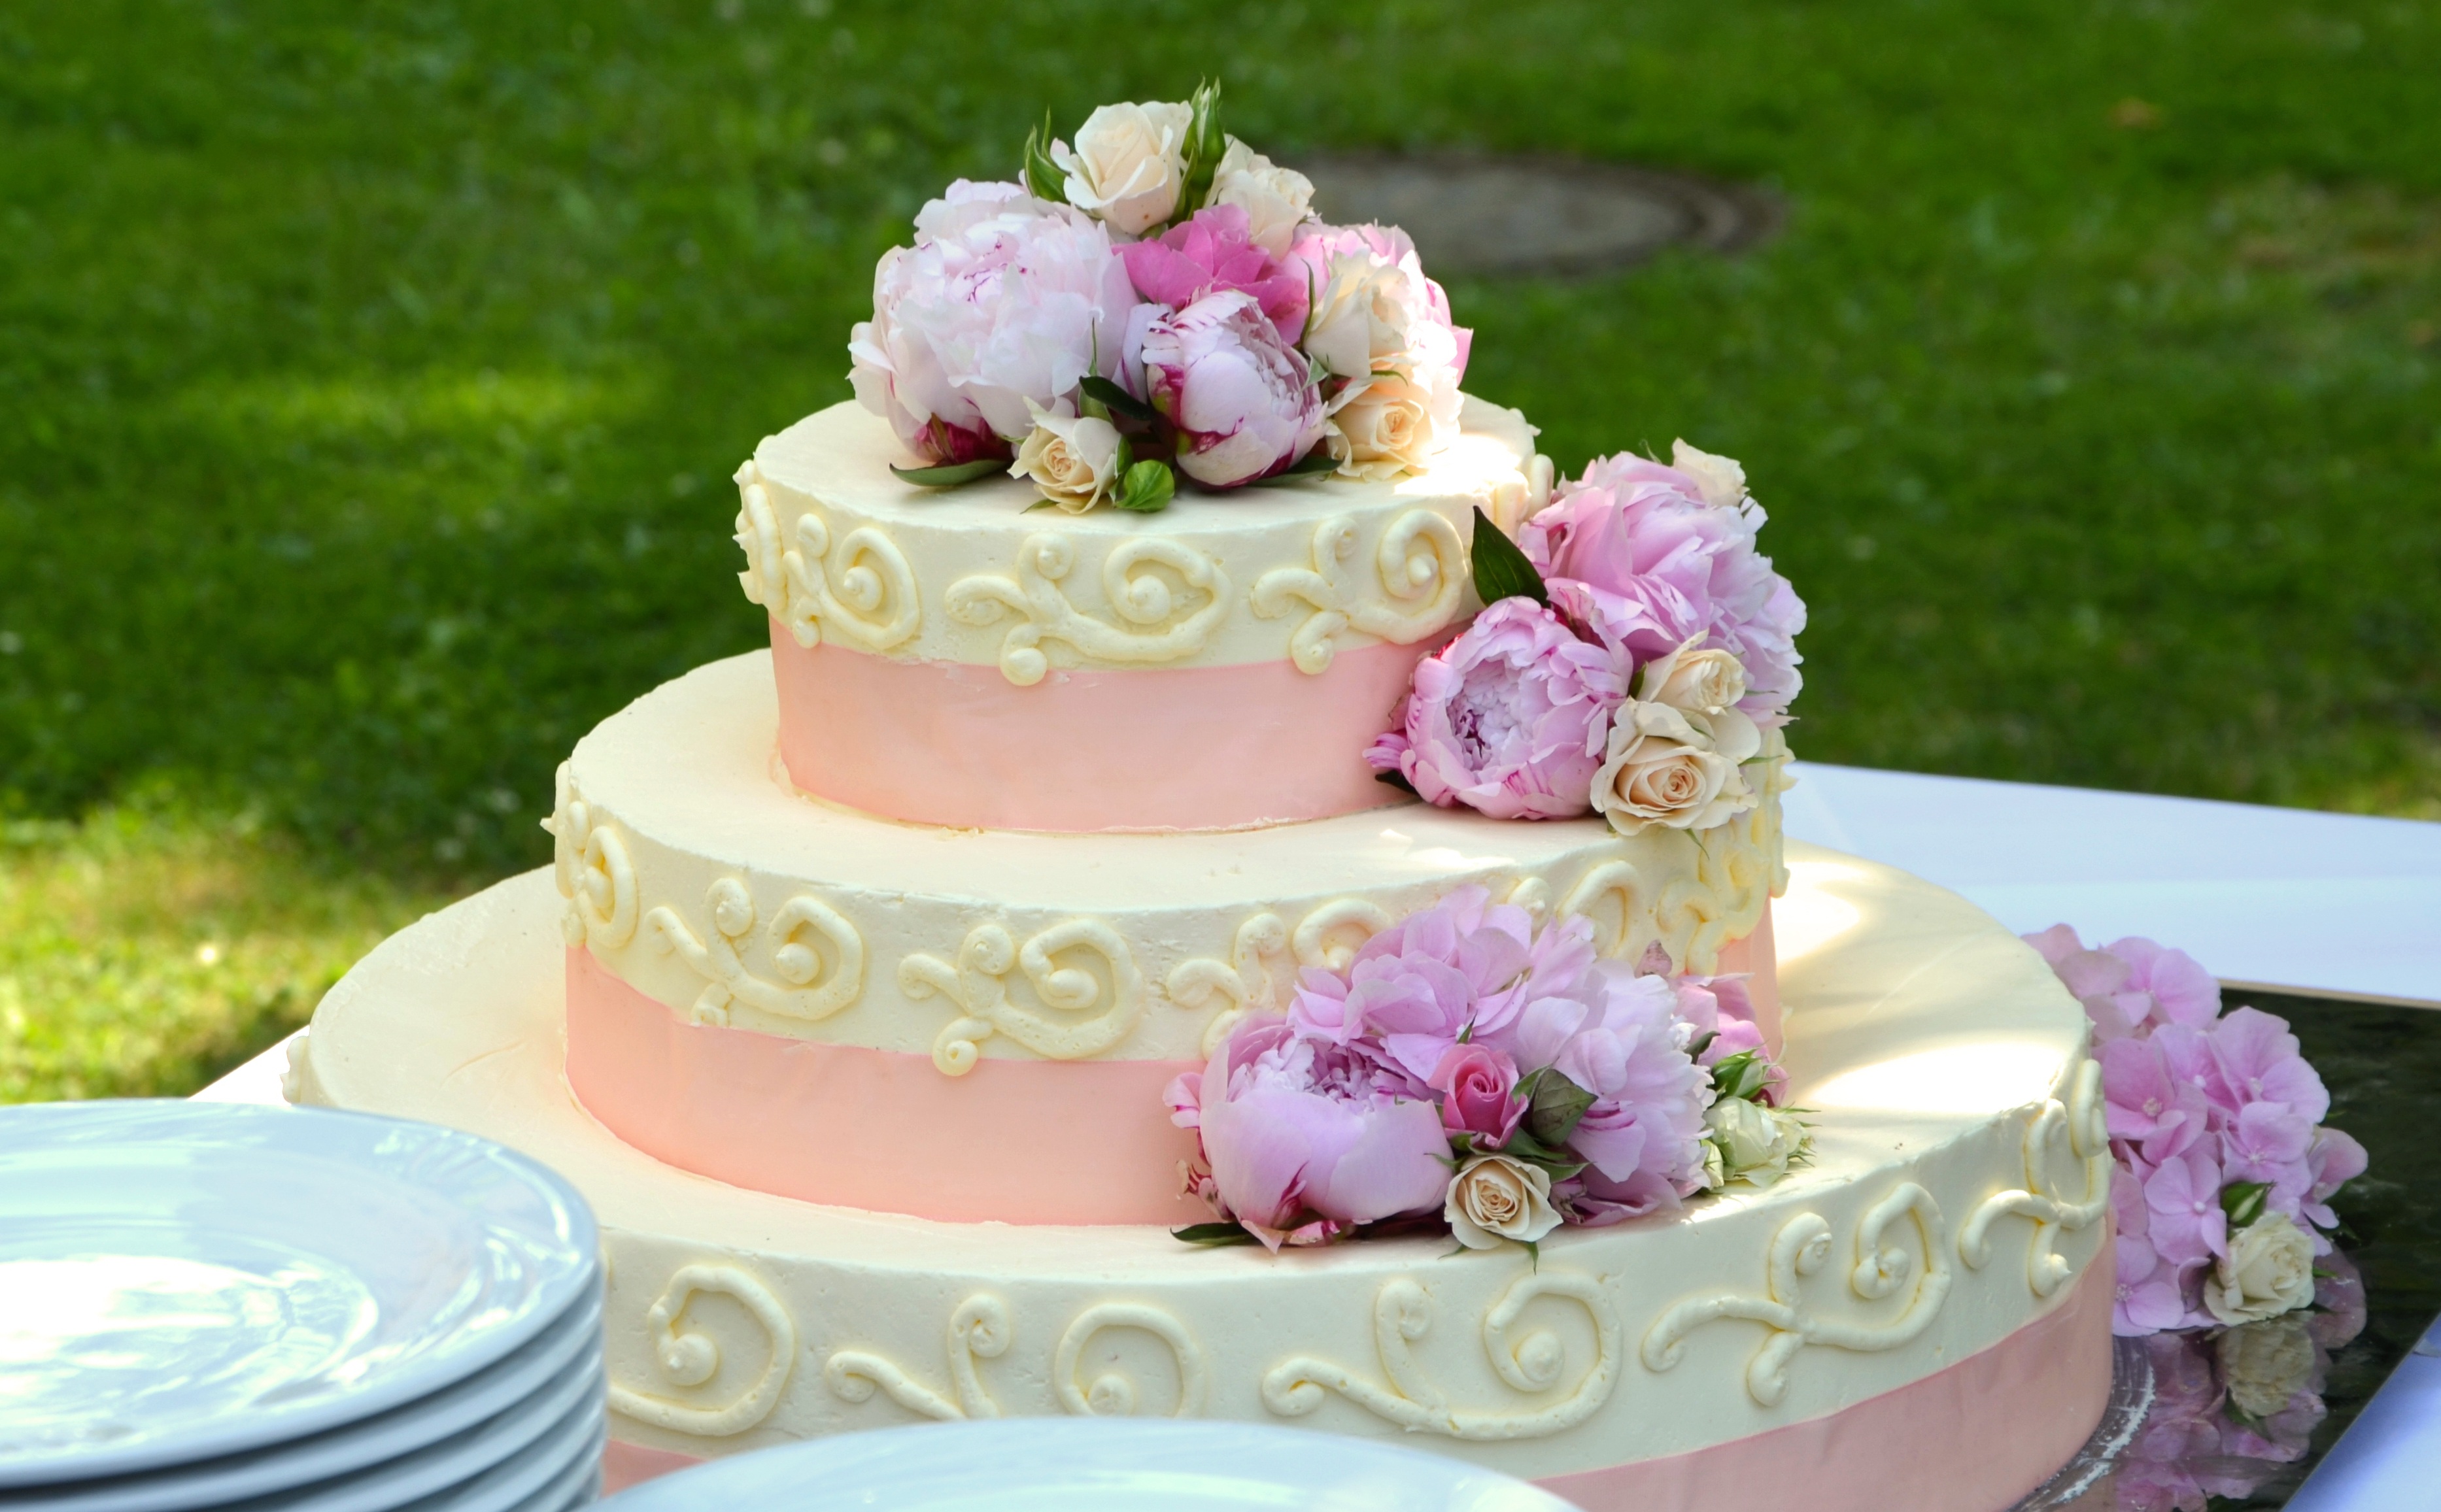 Фото цветок, еда, розовый, десерт, свадебные, брак, вкусные, торт, розы, глазурь, оформленный, украшенный, флористика, жениться, свадебный торт - бесплатные картинки на Fonwall